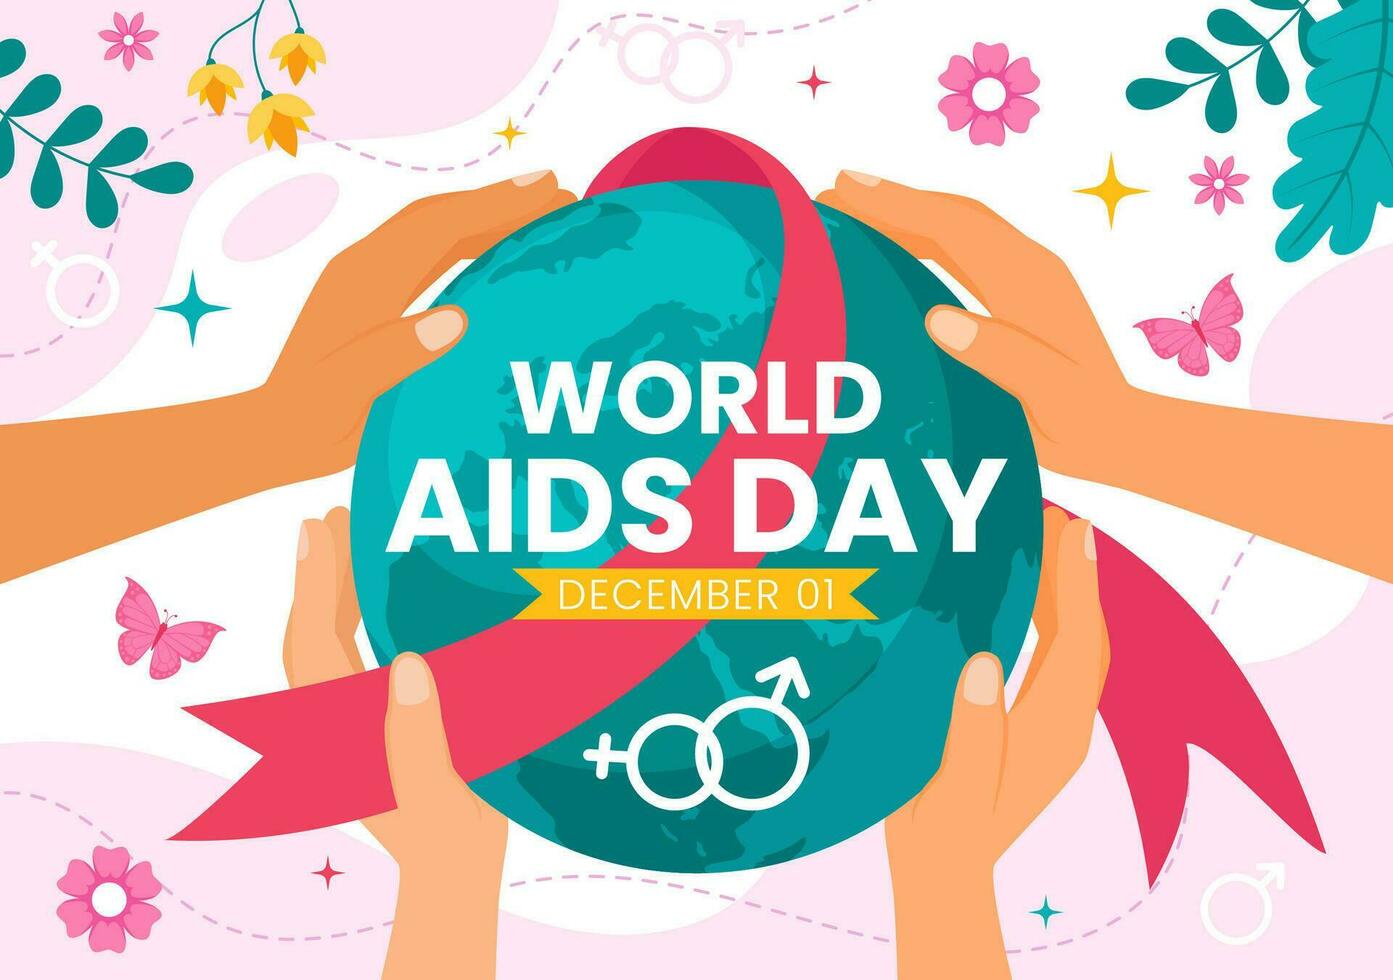 värld AIDS dag vektor illustration på 1 december med röd band till höja medvetenhet av de AIDS epidemi i platt tecknad serie rosa bakgrund design